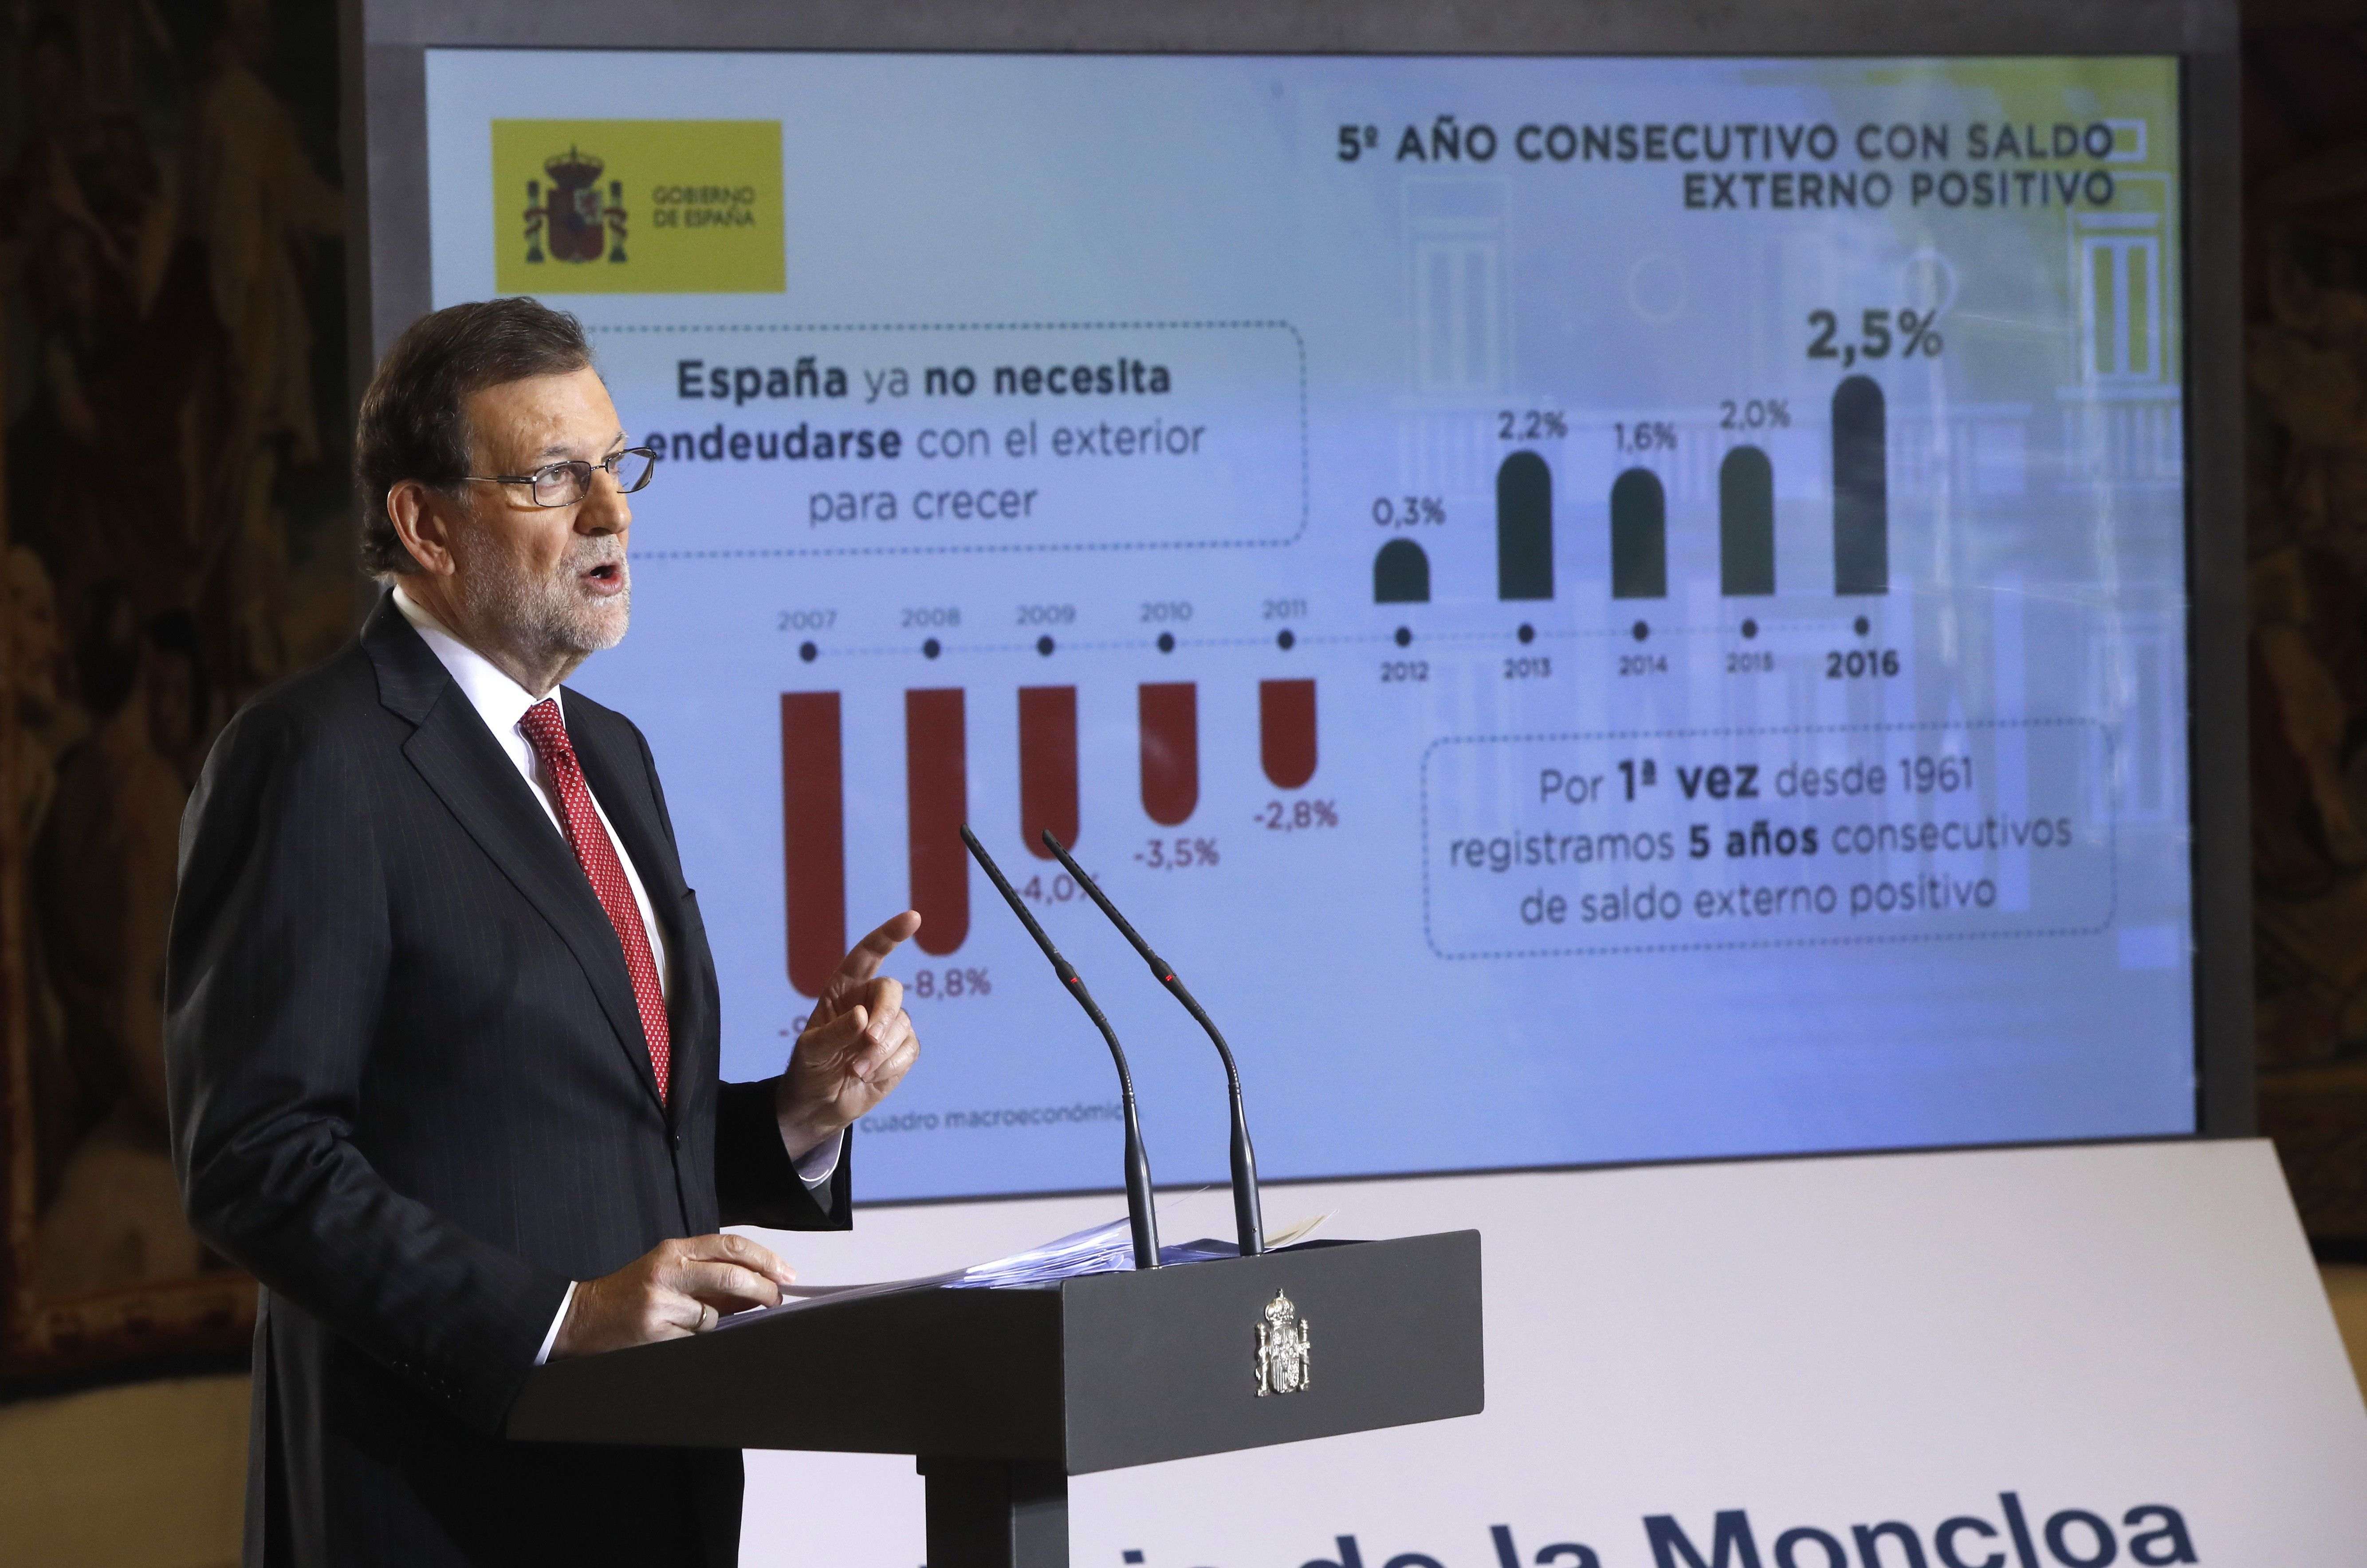 El diàleg de Rajoy: “No donarem cap suport a un referèndum que liquidi la sobirania nacional”